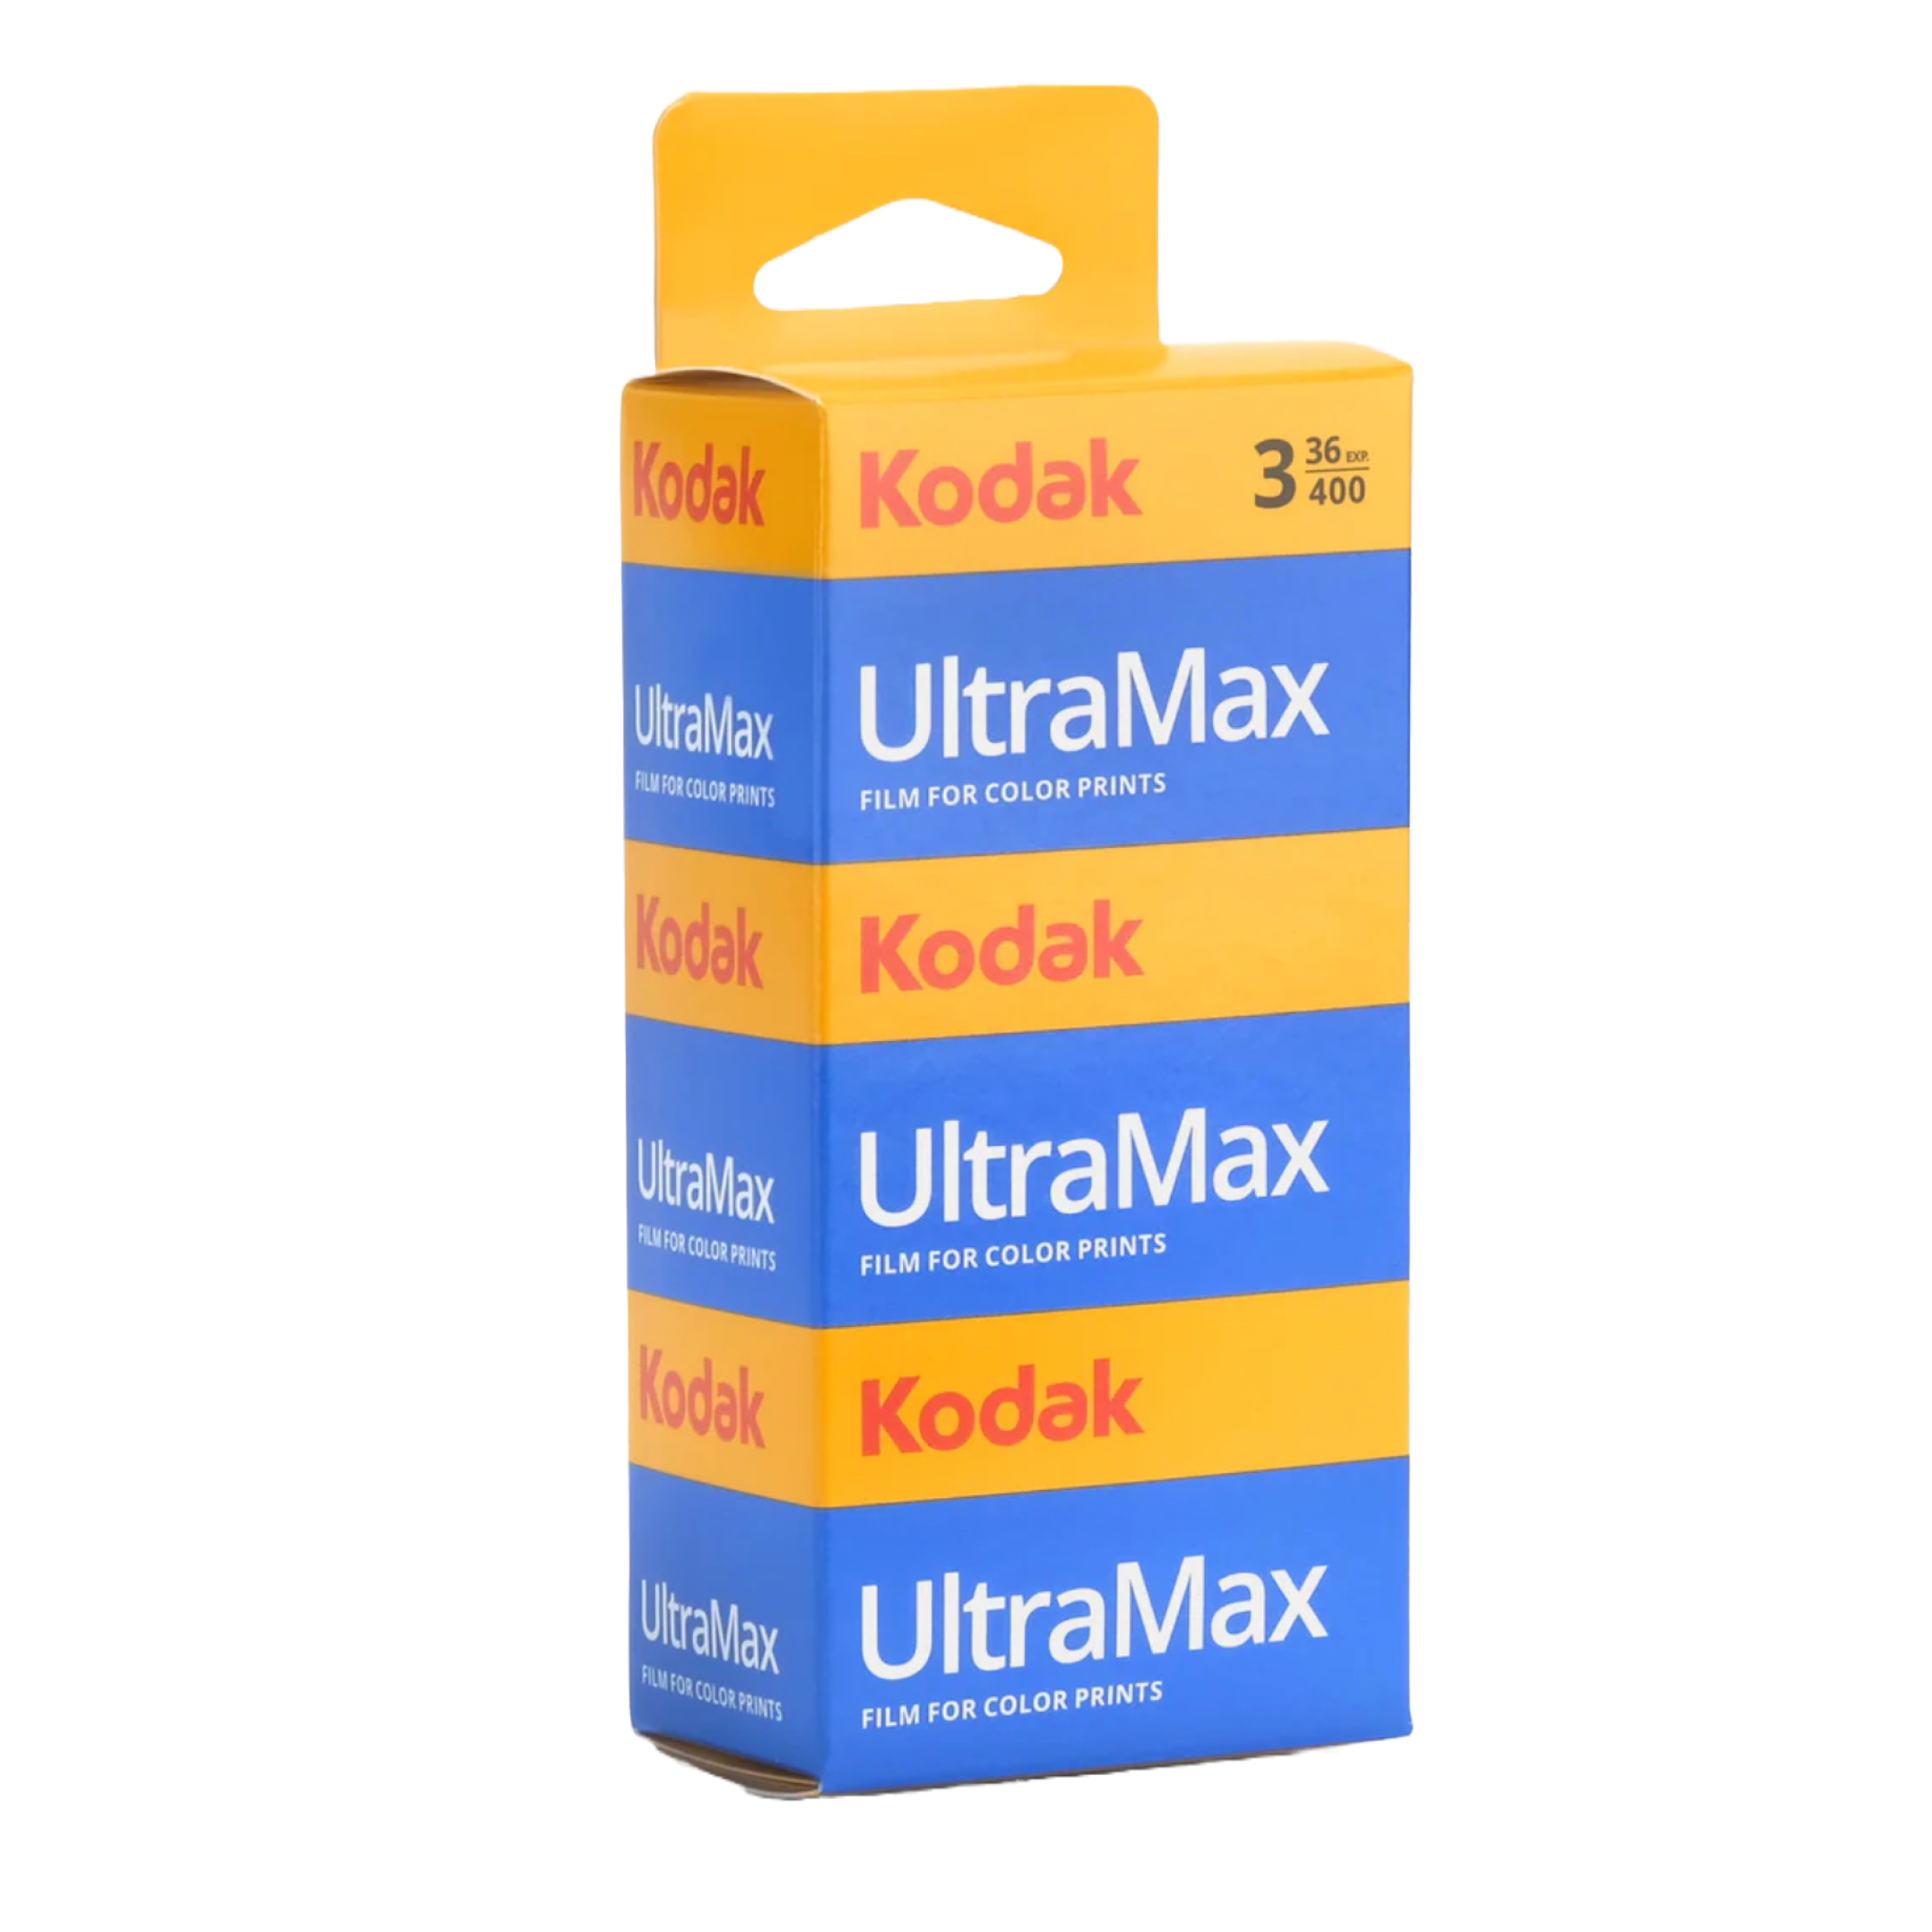 Kodak UltraMax 400 135-36